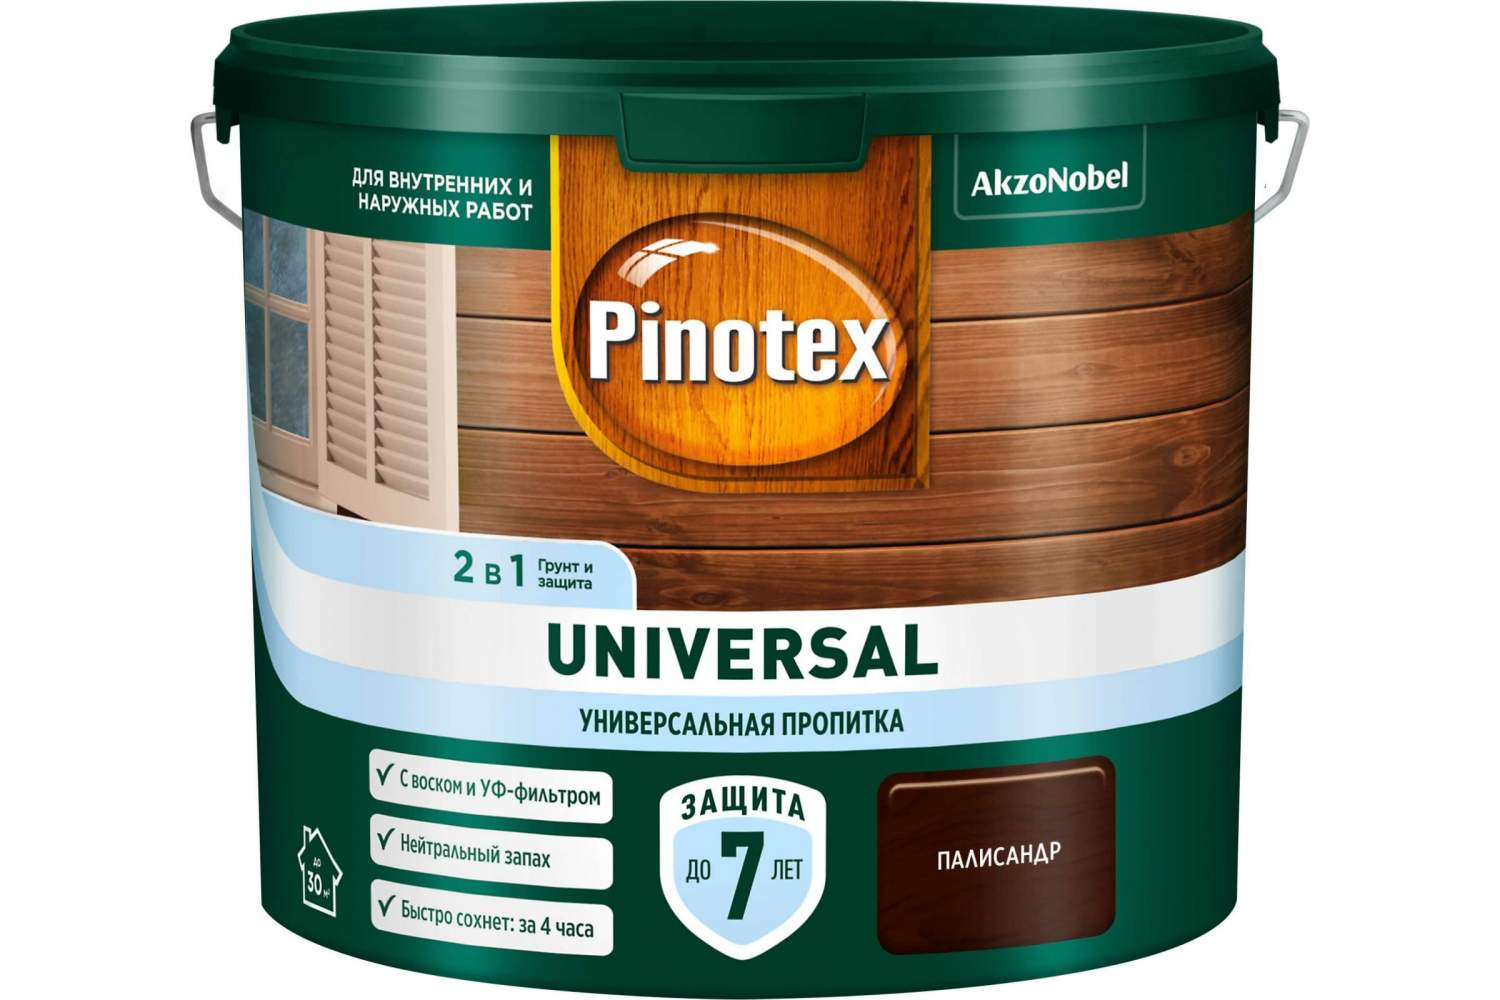 Пропитка универсальная для дерева Pinotex Universal 2 в 1, палисандр, 9 л -  отзывы покупателей на Мегамаркет